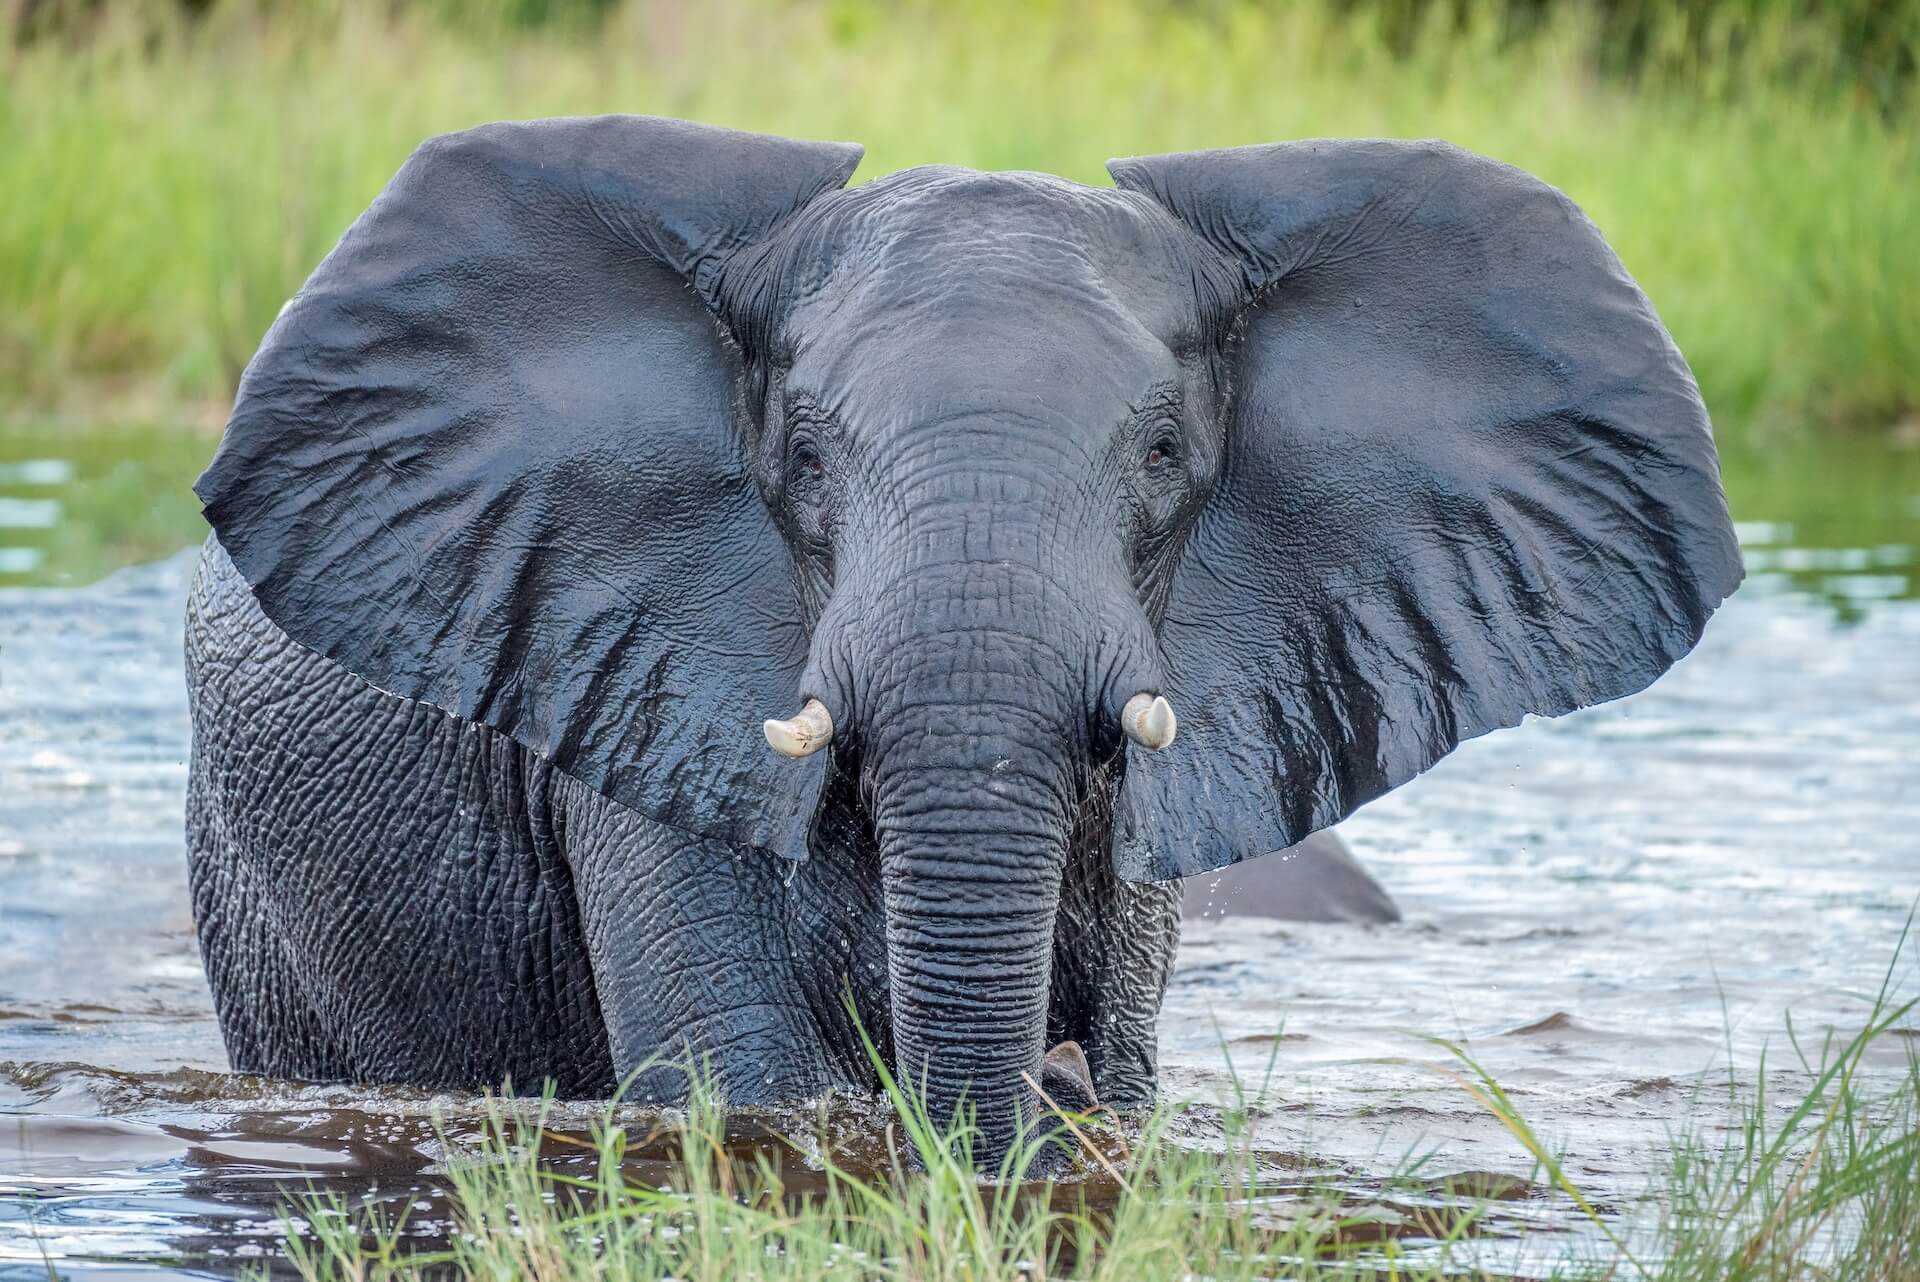 The beautiful elephants of Botswana